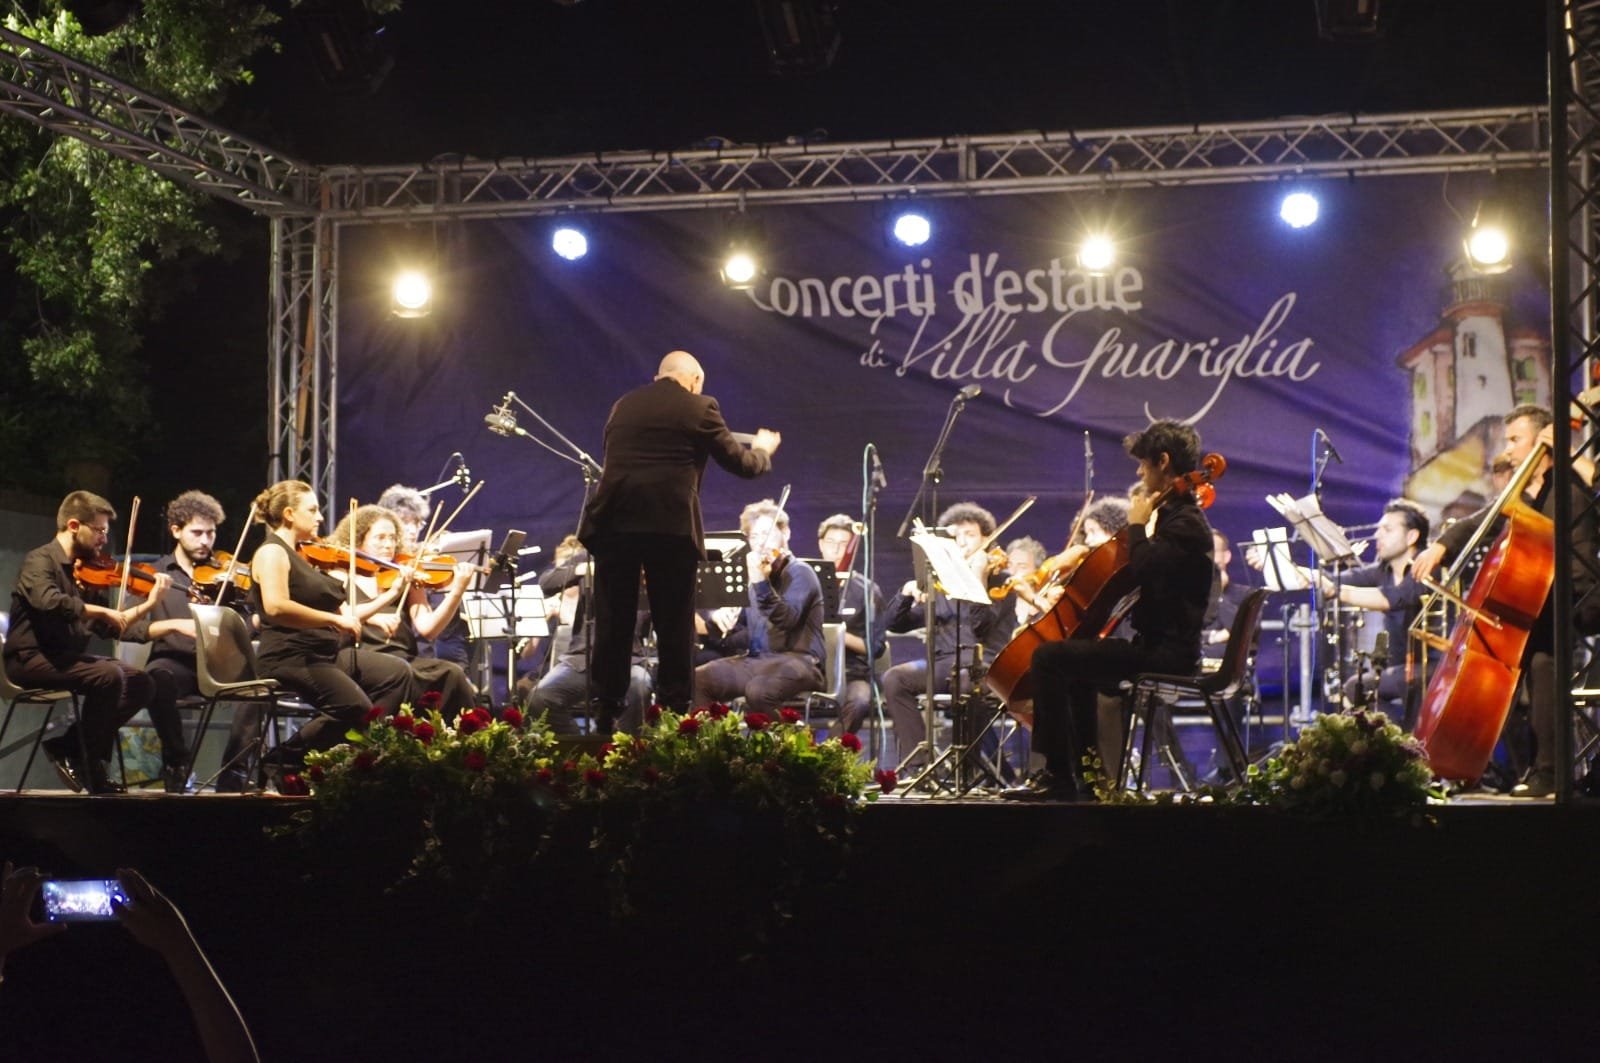 Il Vescovado - Concerti d'Estate di Villa Guariglia, 17 luglio a Raito il  concerto in ricordo di Enrico Parrilli